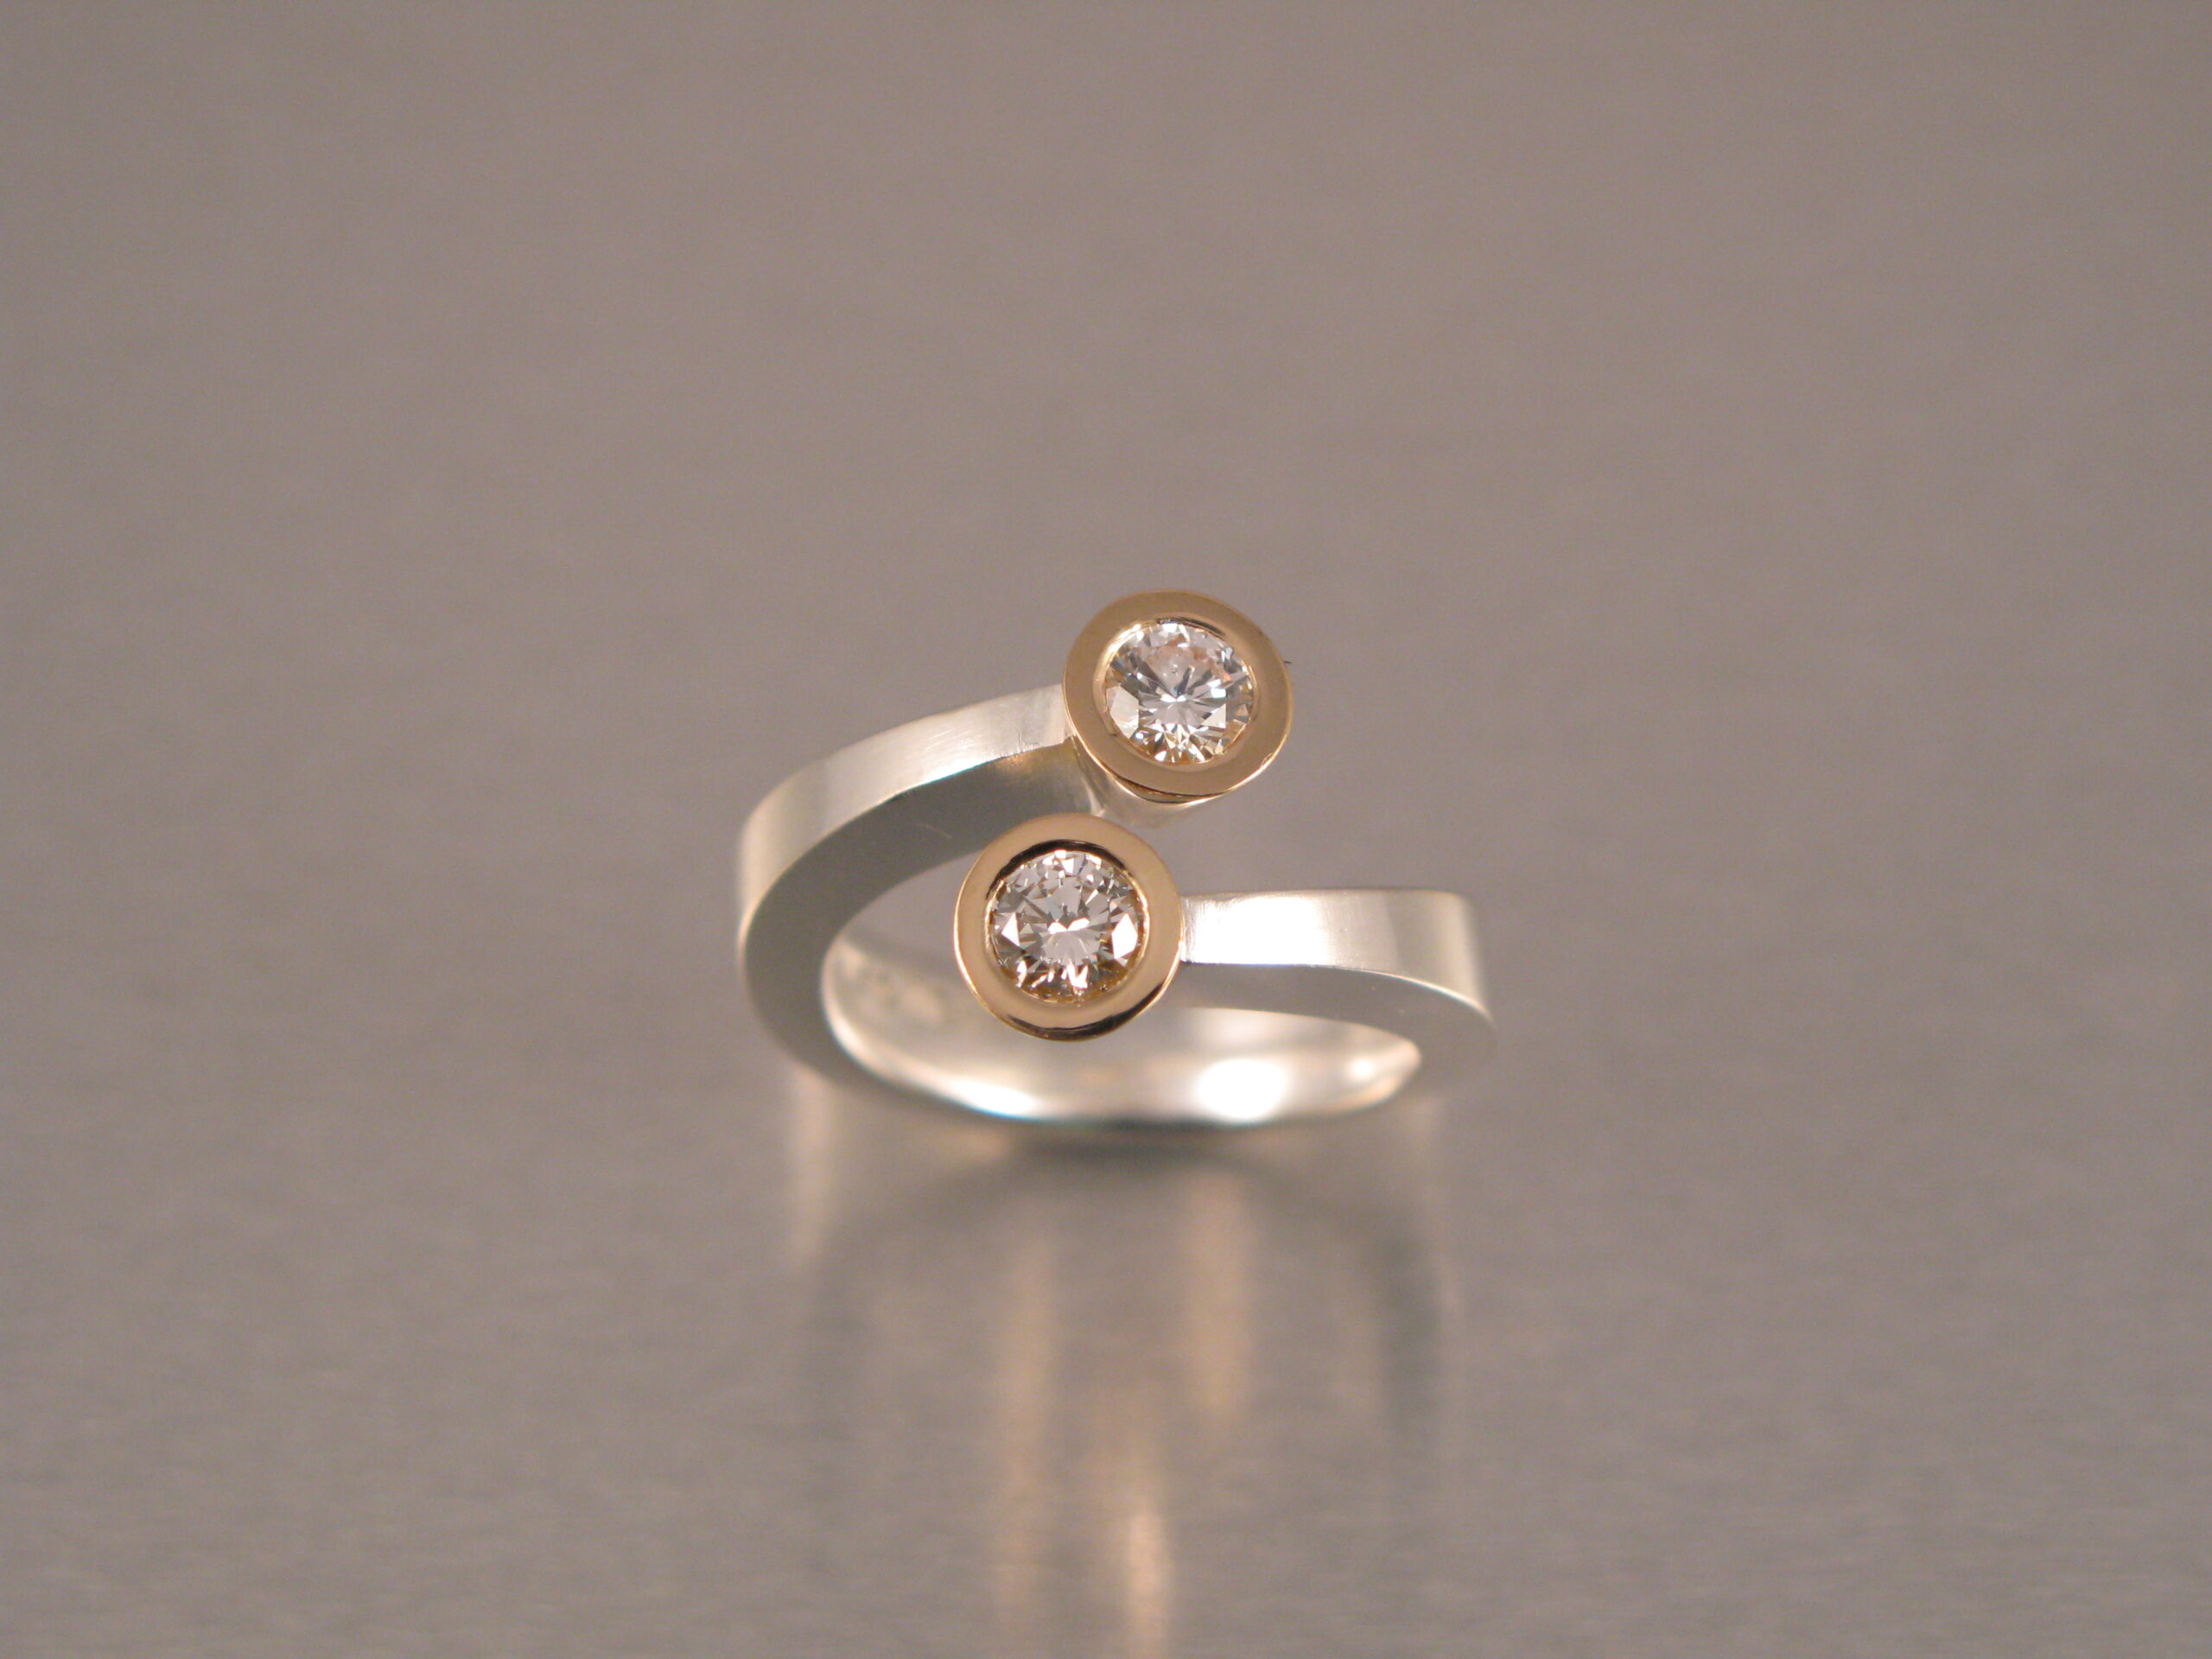 Ring, ”Omlottring”, silver, guld, vit och brun briljant